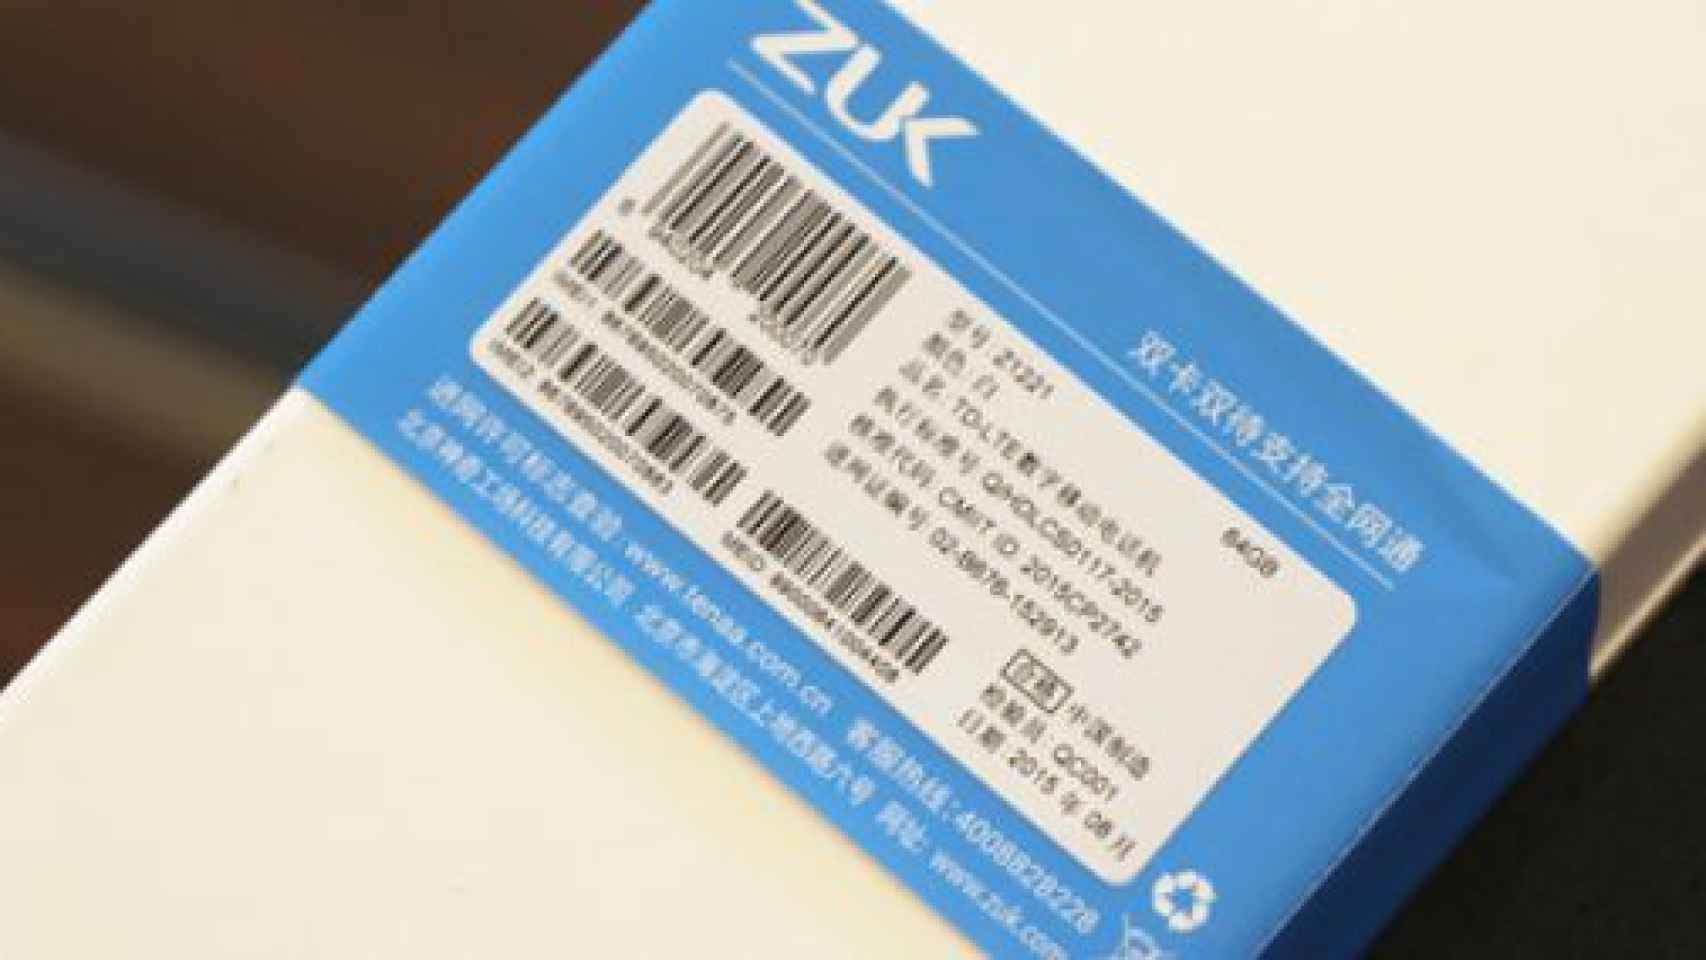 El ZUK Z2 llegará en 2016; la beta de Android M para el ZUK Z1 estará pronto